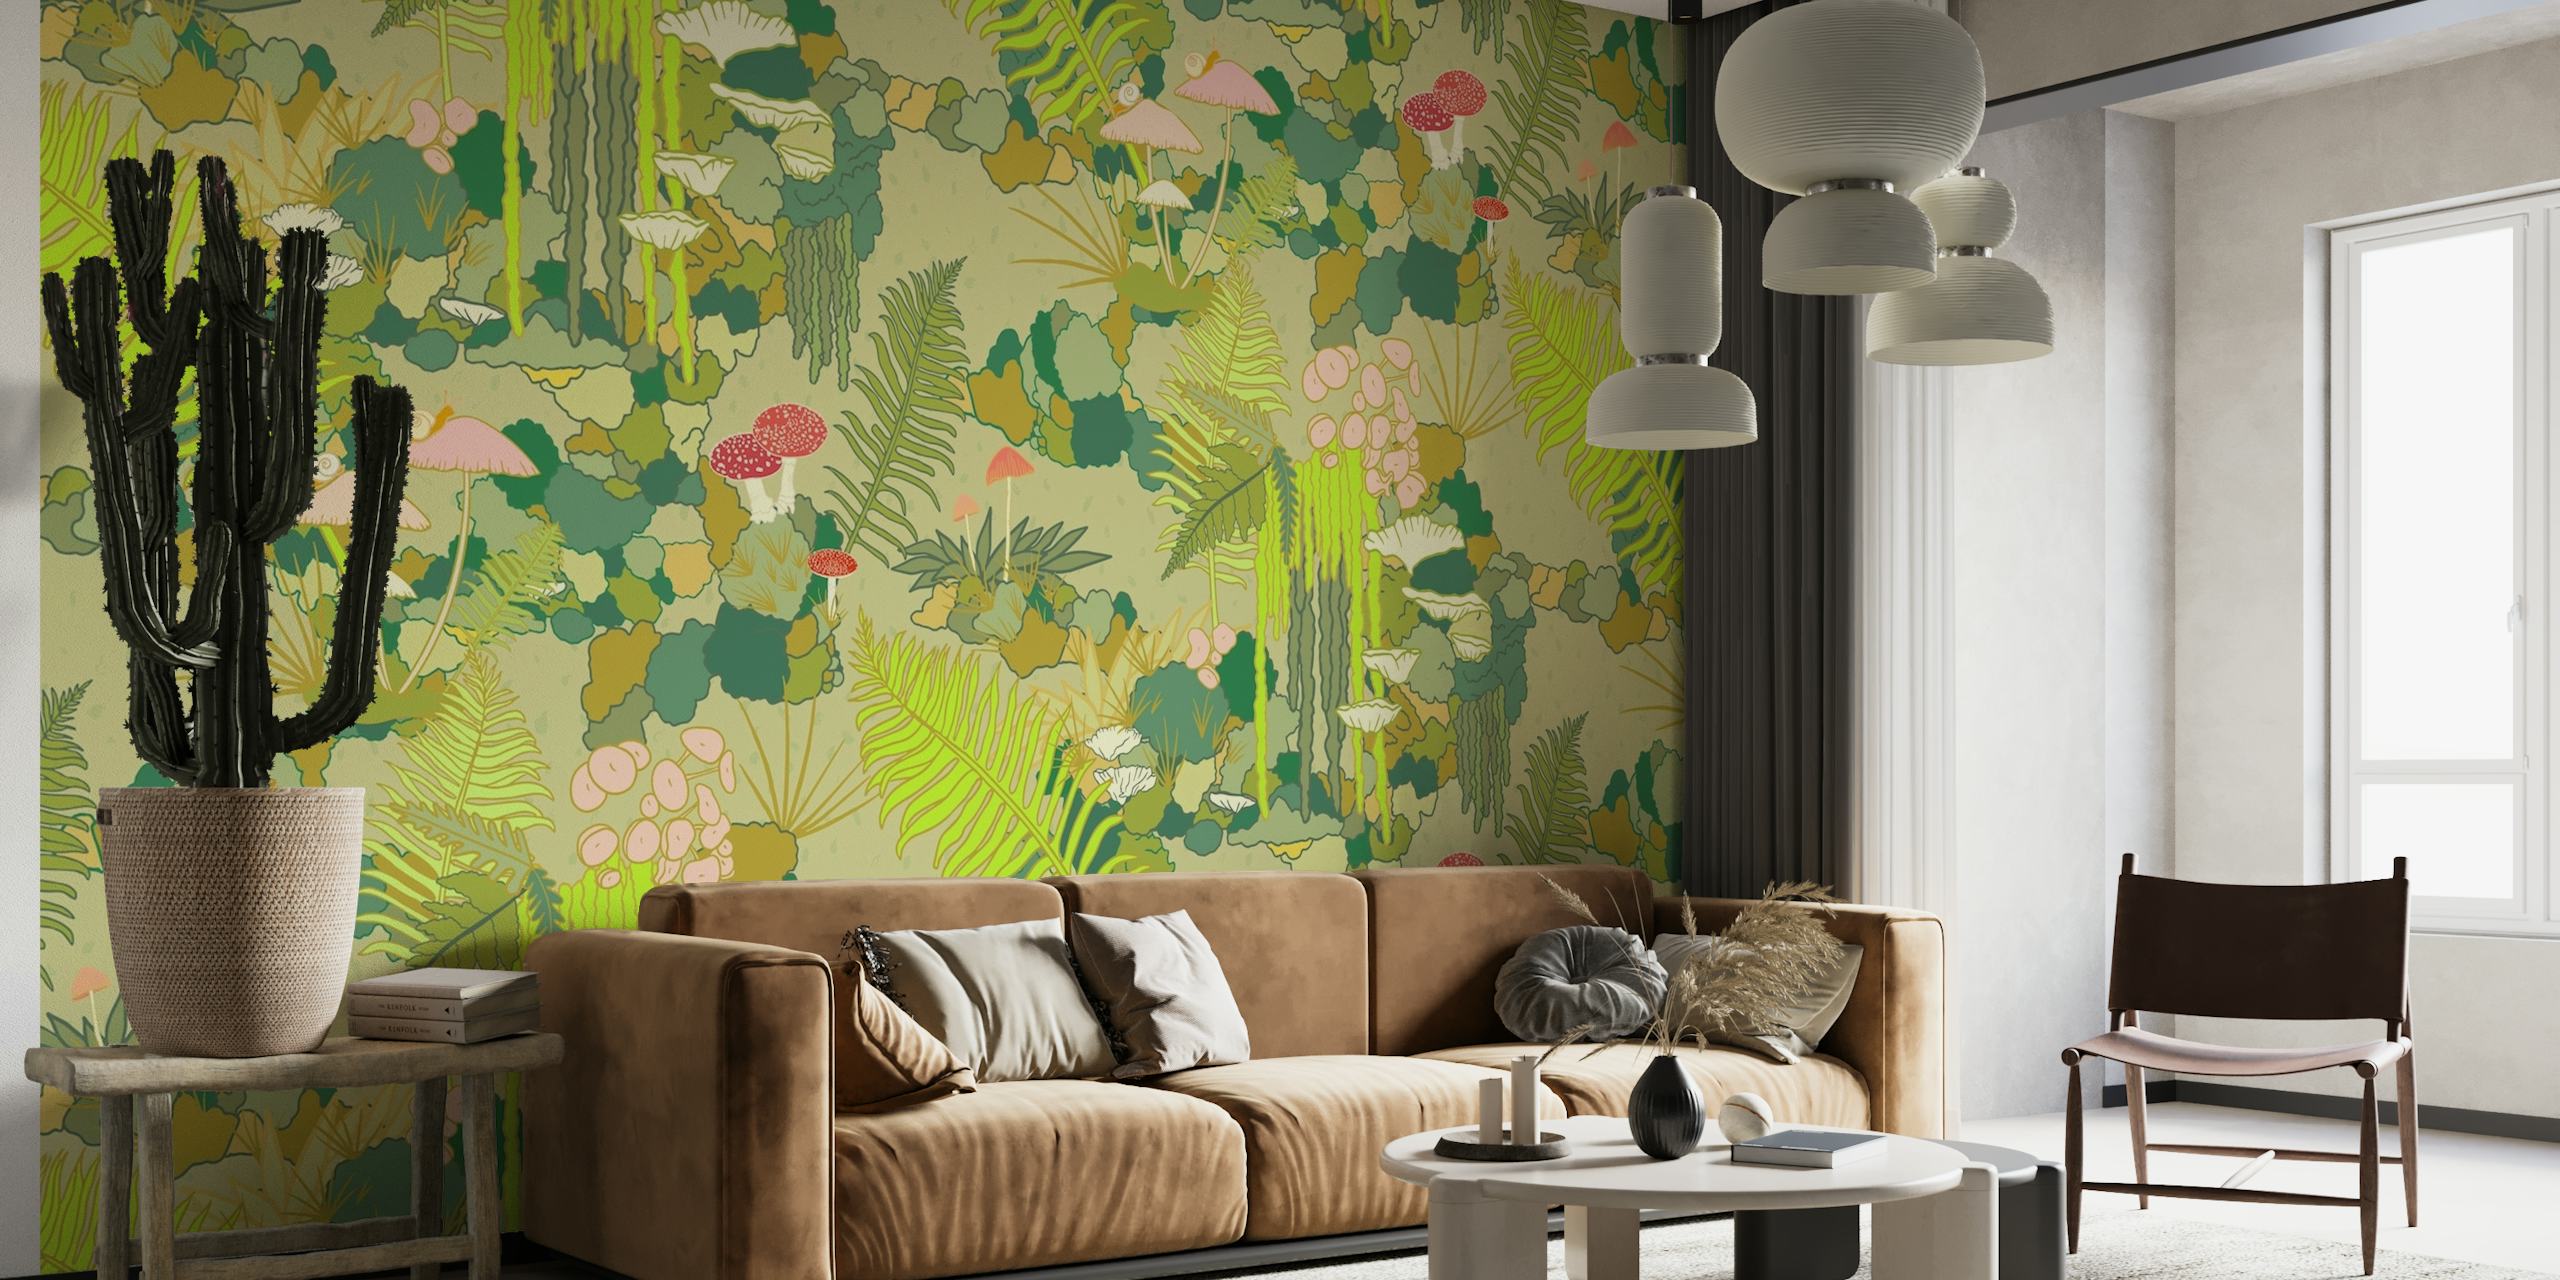 Papier peint mural Mossy Forest Floor représentant un riche motif de feuillage et de champignons